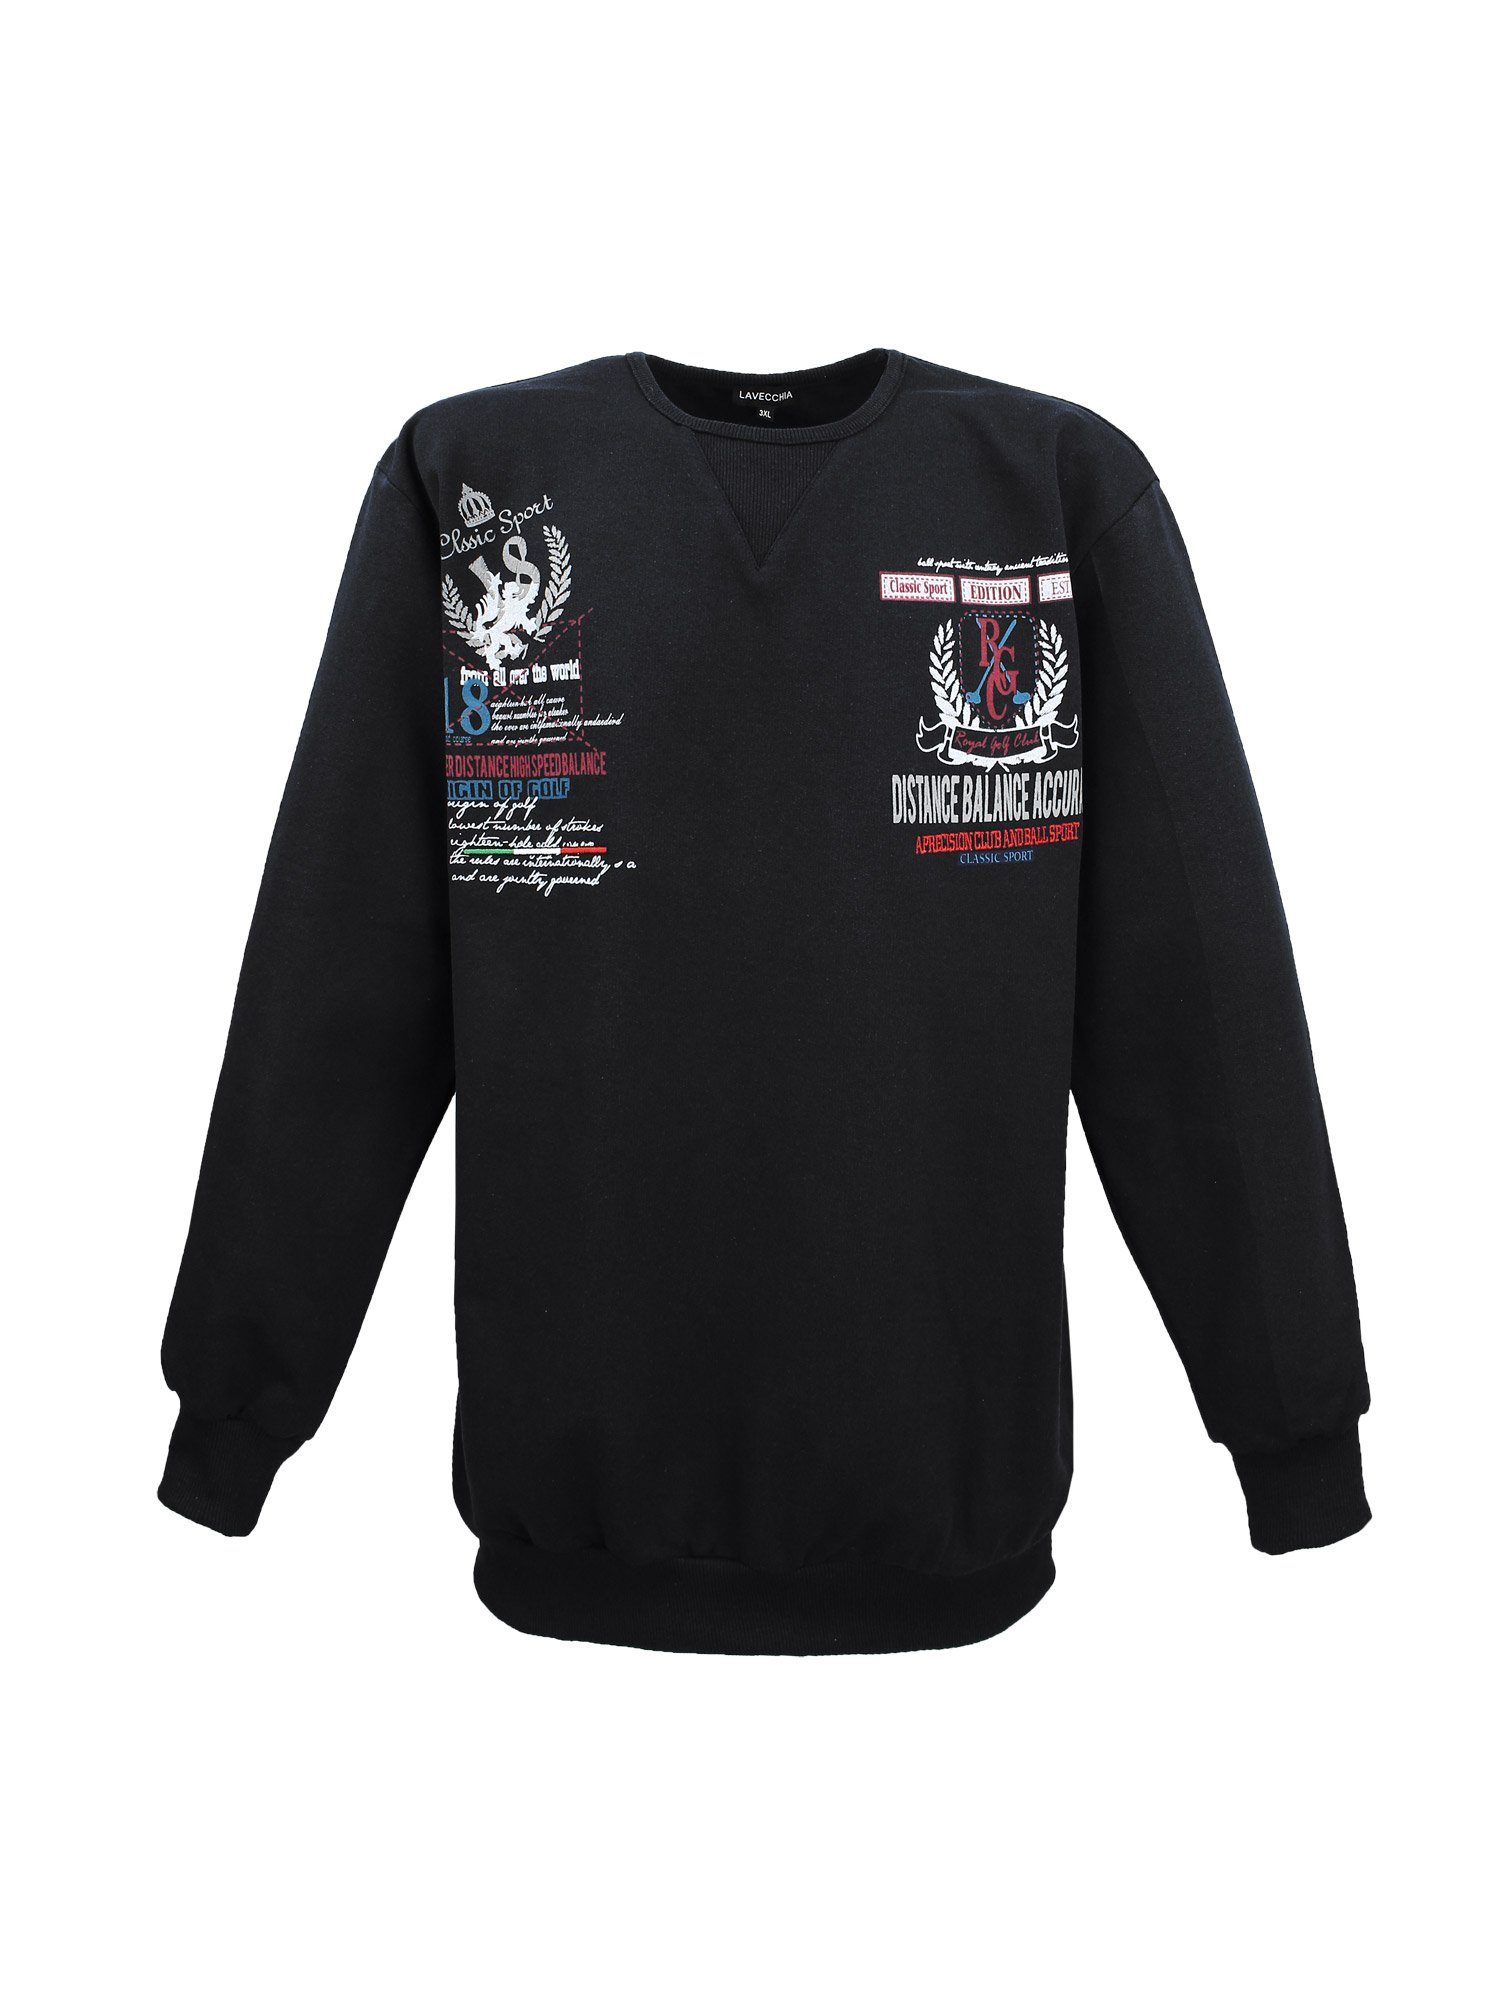 Sweat Lavecchia Sweater Pullover Sweatshirt Pulli LV-603 Übergrößen schwarz